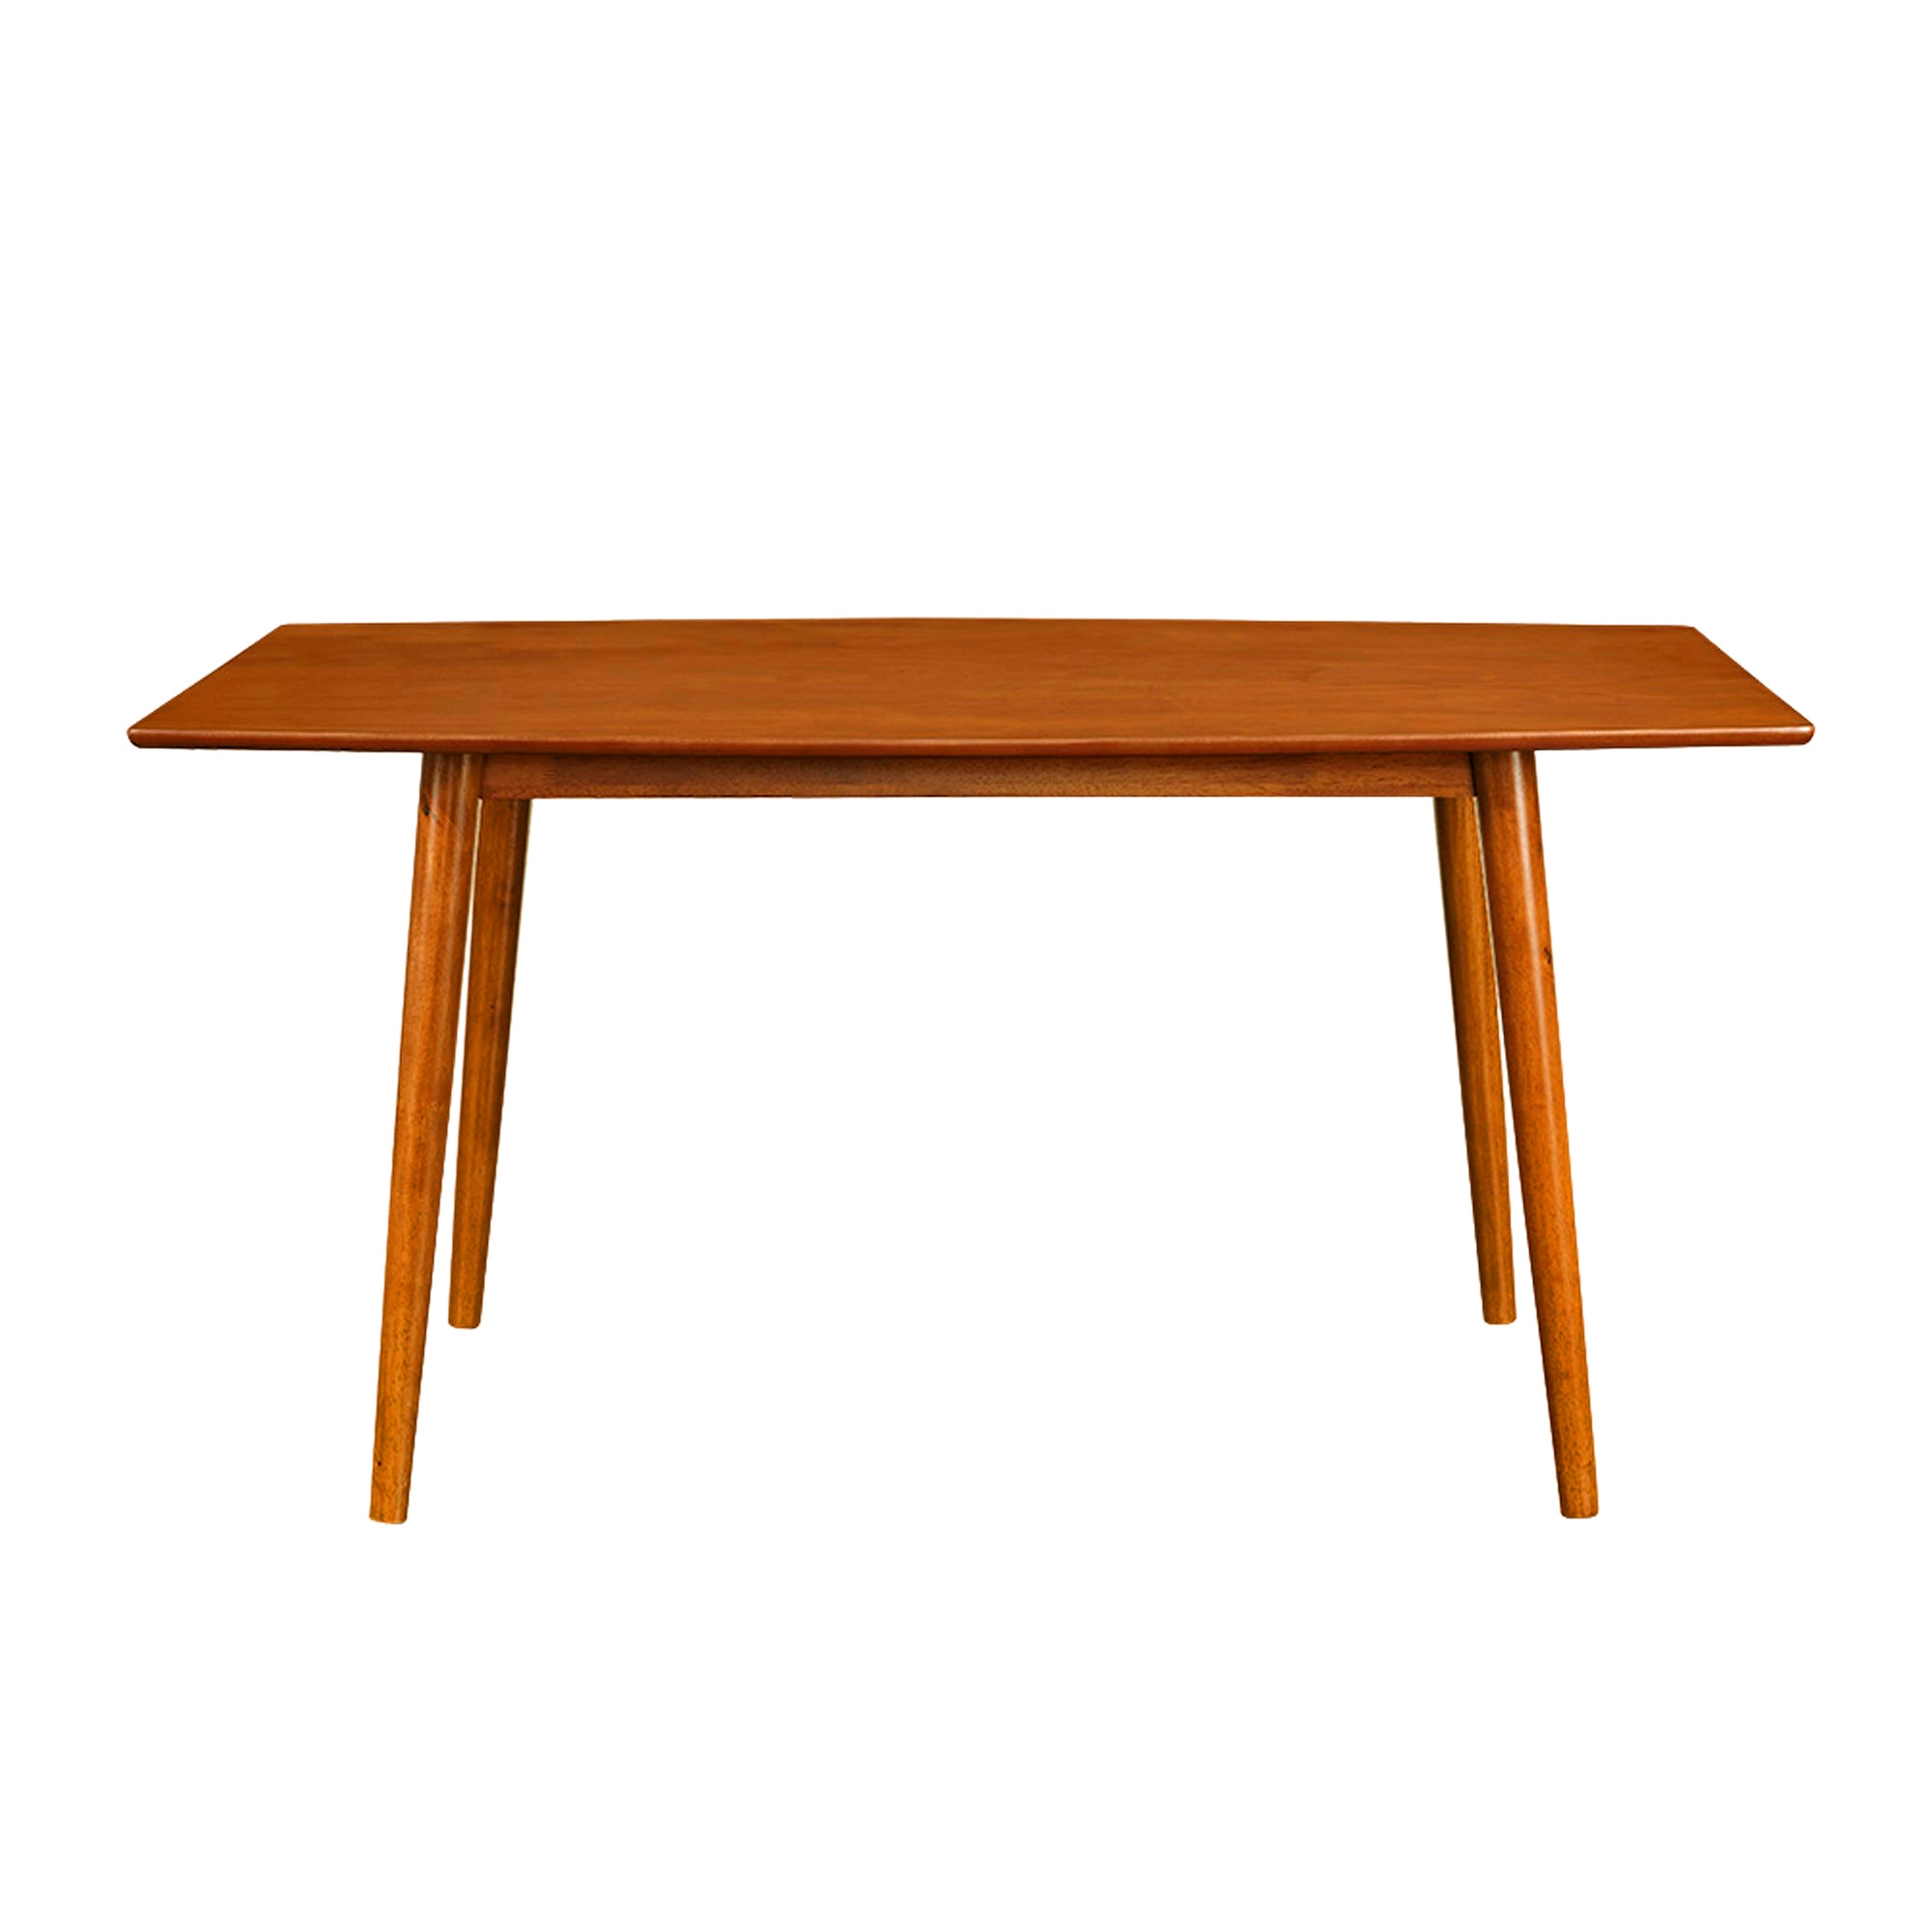 60" Mid Century Wood Dining Table - Acorn - Image 2